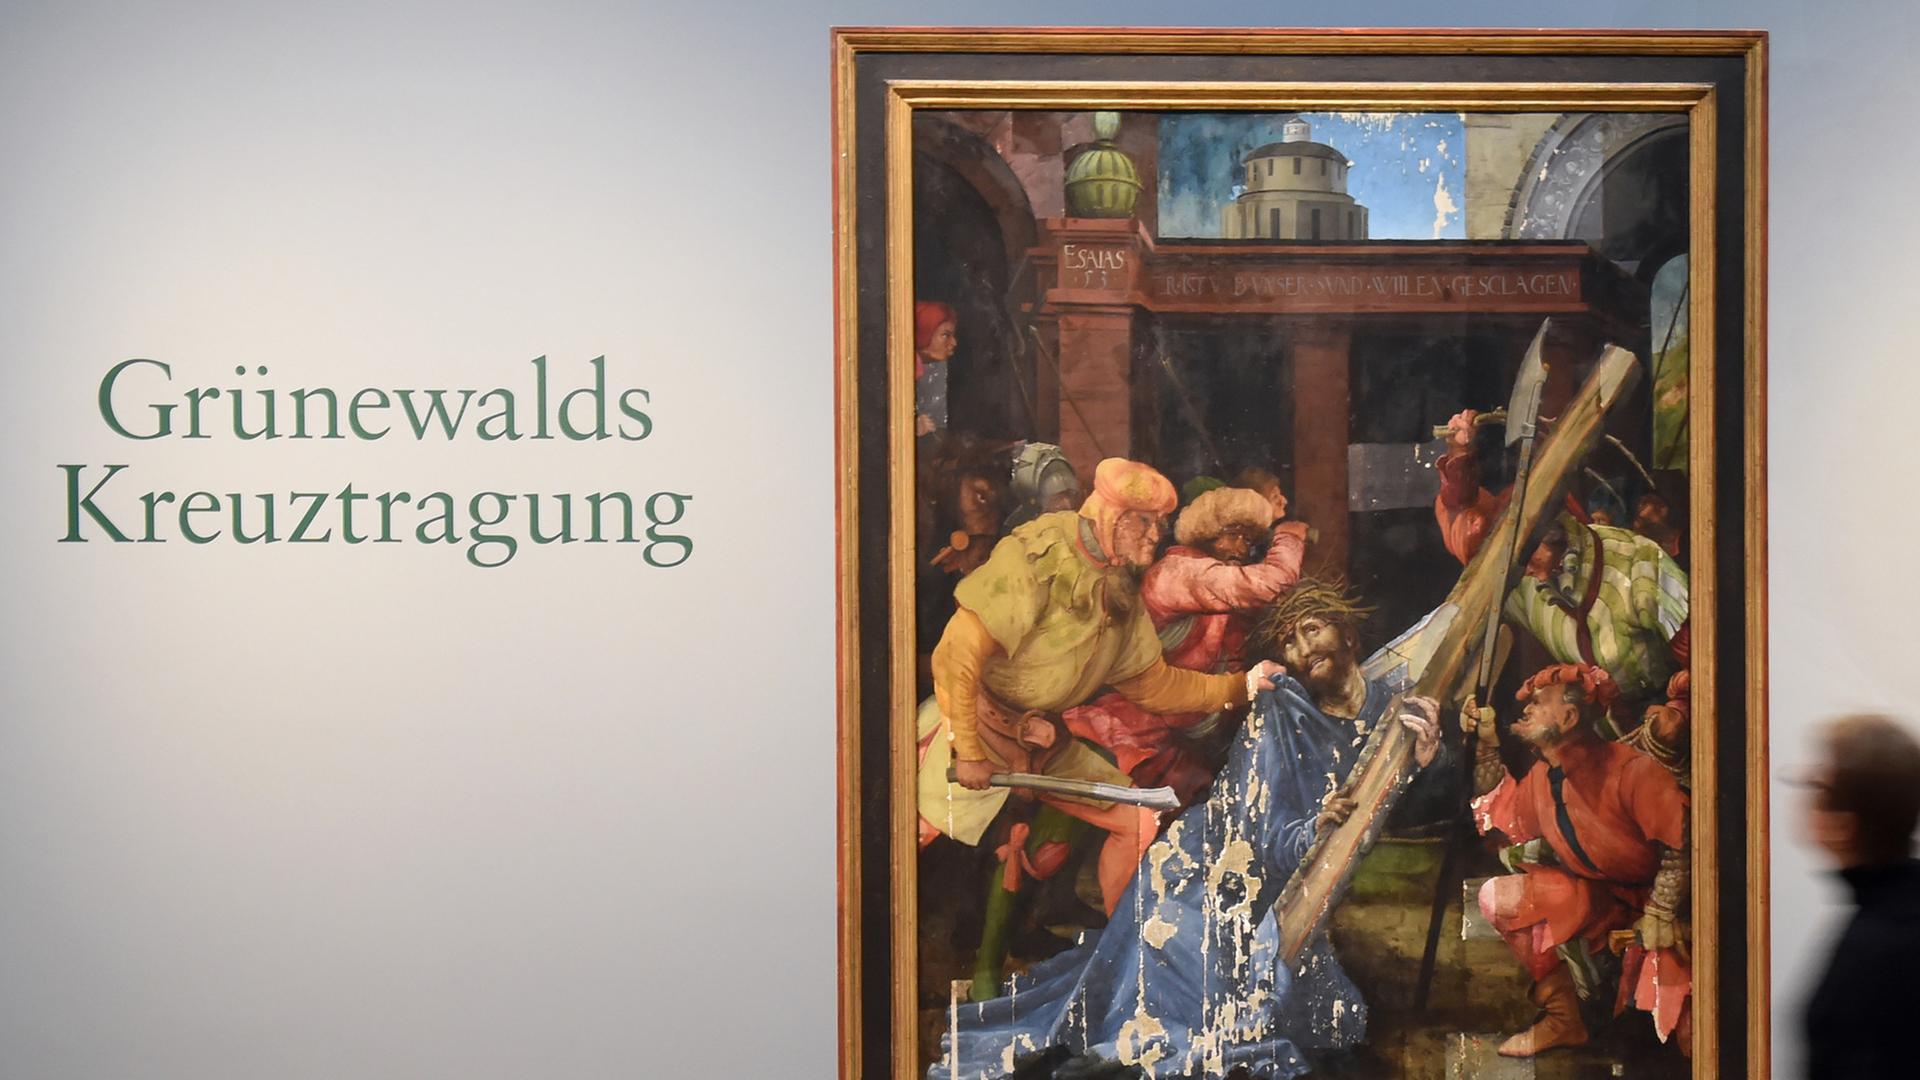 Eine Besucherin der Staatlichen Kunsthalle Karlsruhe betrachtet das Werk "Kreuztragung Christi". Mathis Gothart Nithart - genannt Grünewald - hat es um 1523/25 gemalt. Seit einigen Jahren wird das Werk restauriert.